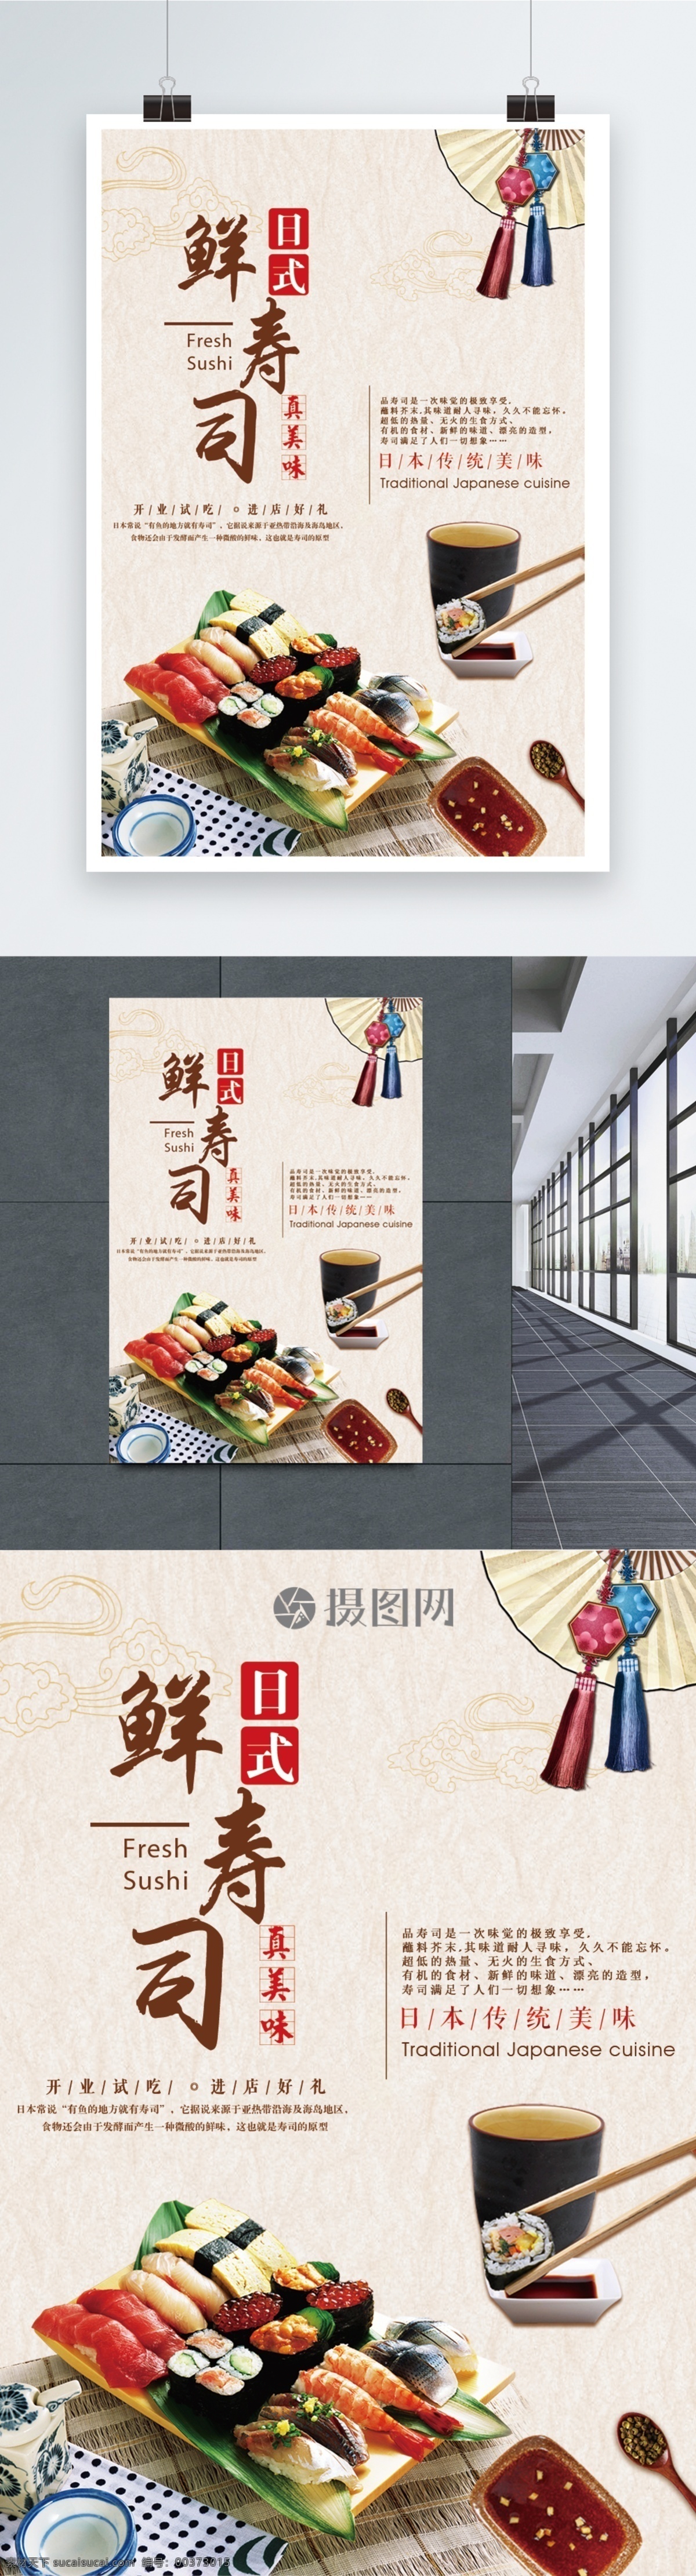 日本 鲜 寿司 美食 海报 日式寿司海报 寿司美食海报 广告 日式